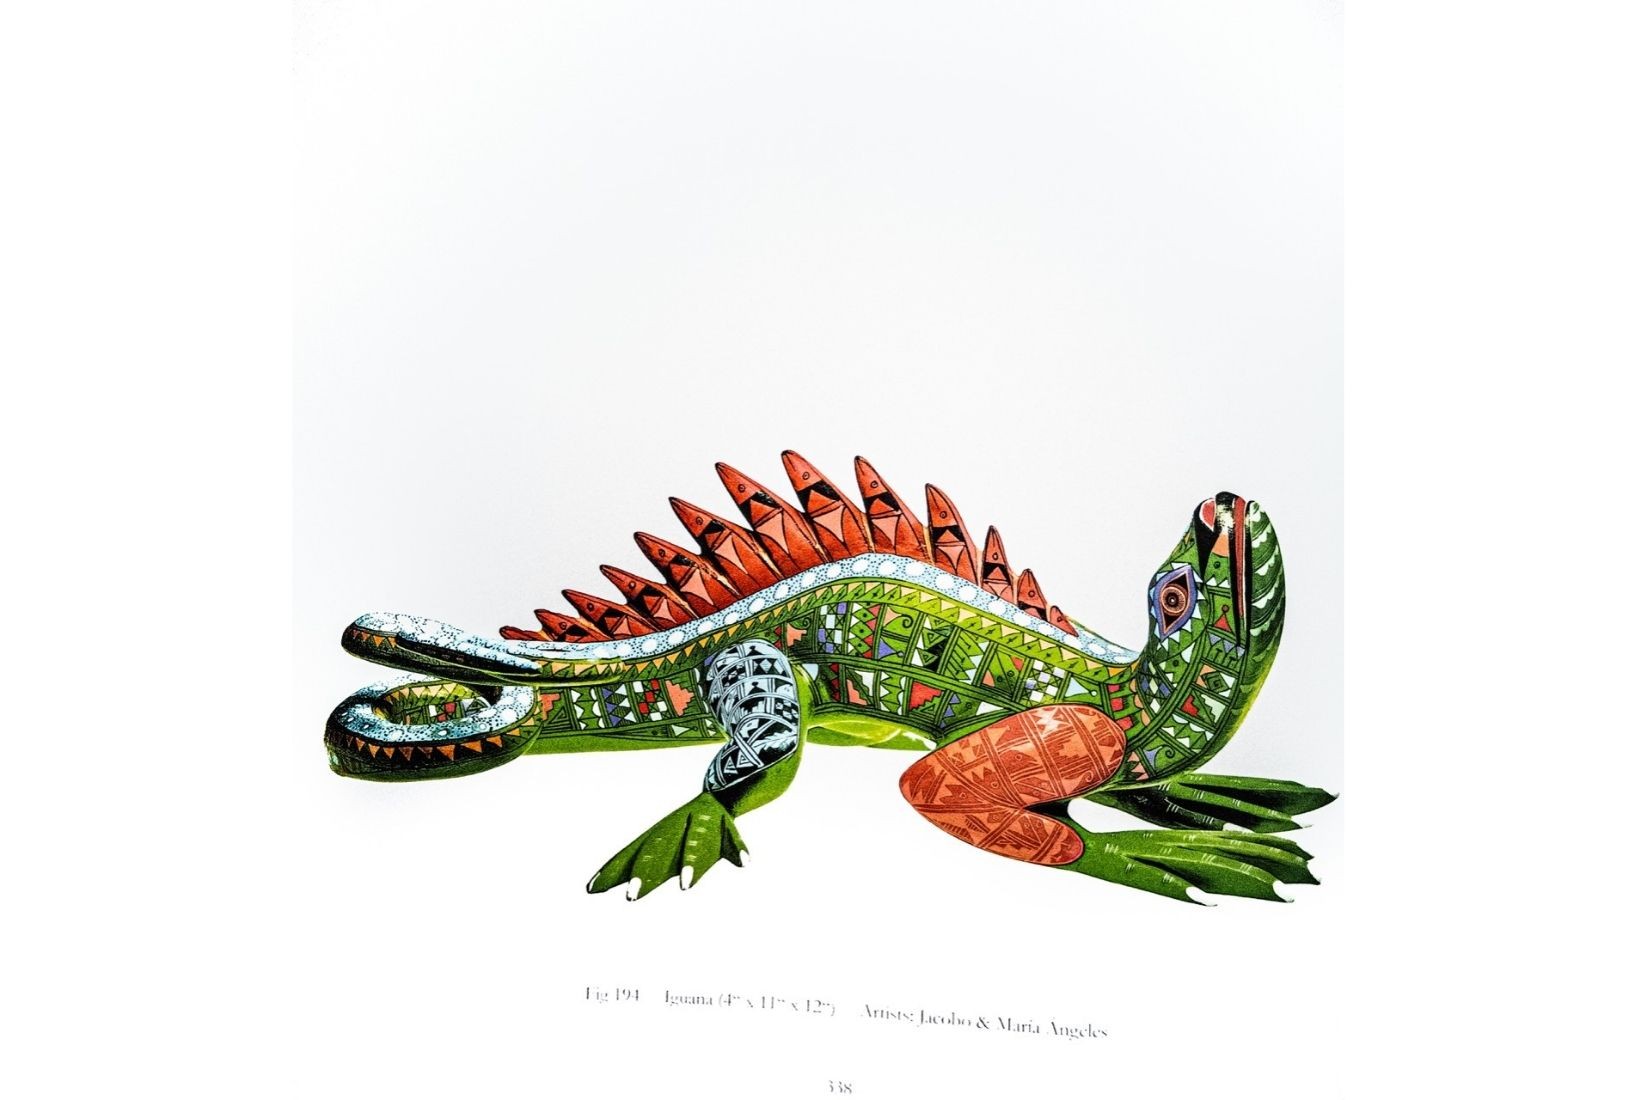 Alebrije (iguana) de madera policromada. Libro Alebrijes de Hartmut Zantke.